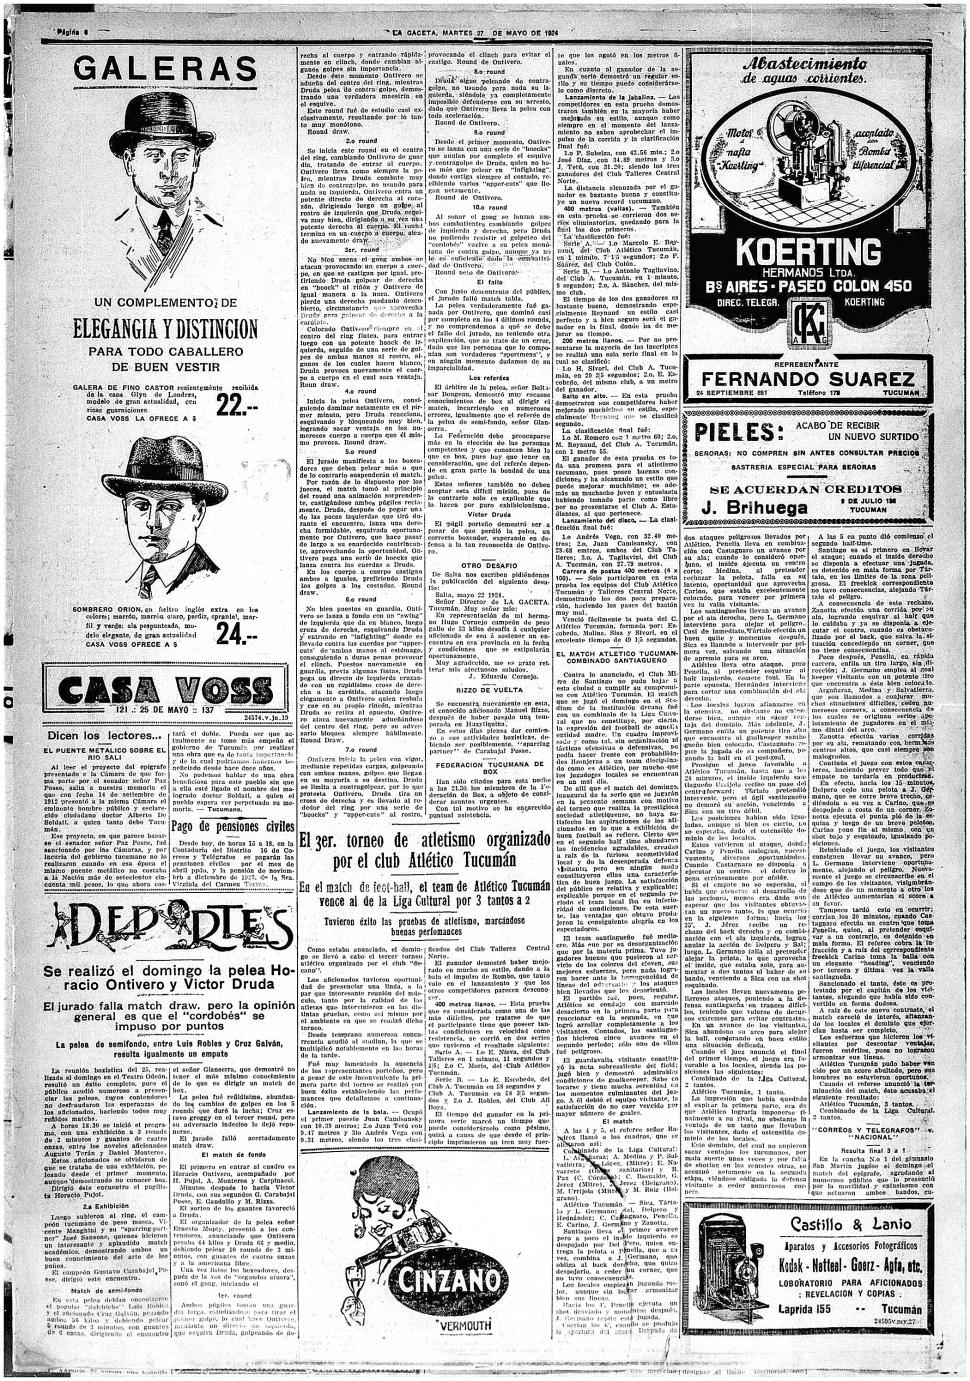 27 DE MAYO DE 1927. En el extremo inferior derecho de aquella edición de LA GACETA se publica un aviso de la casa de fotografía Castillo.